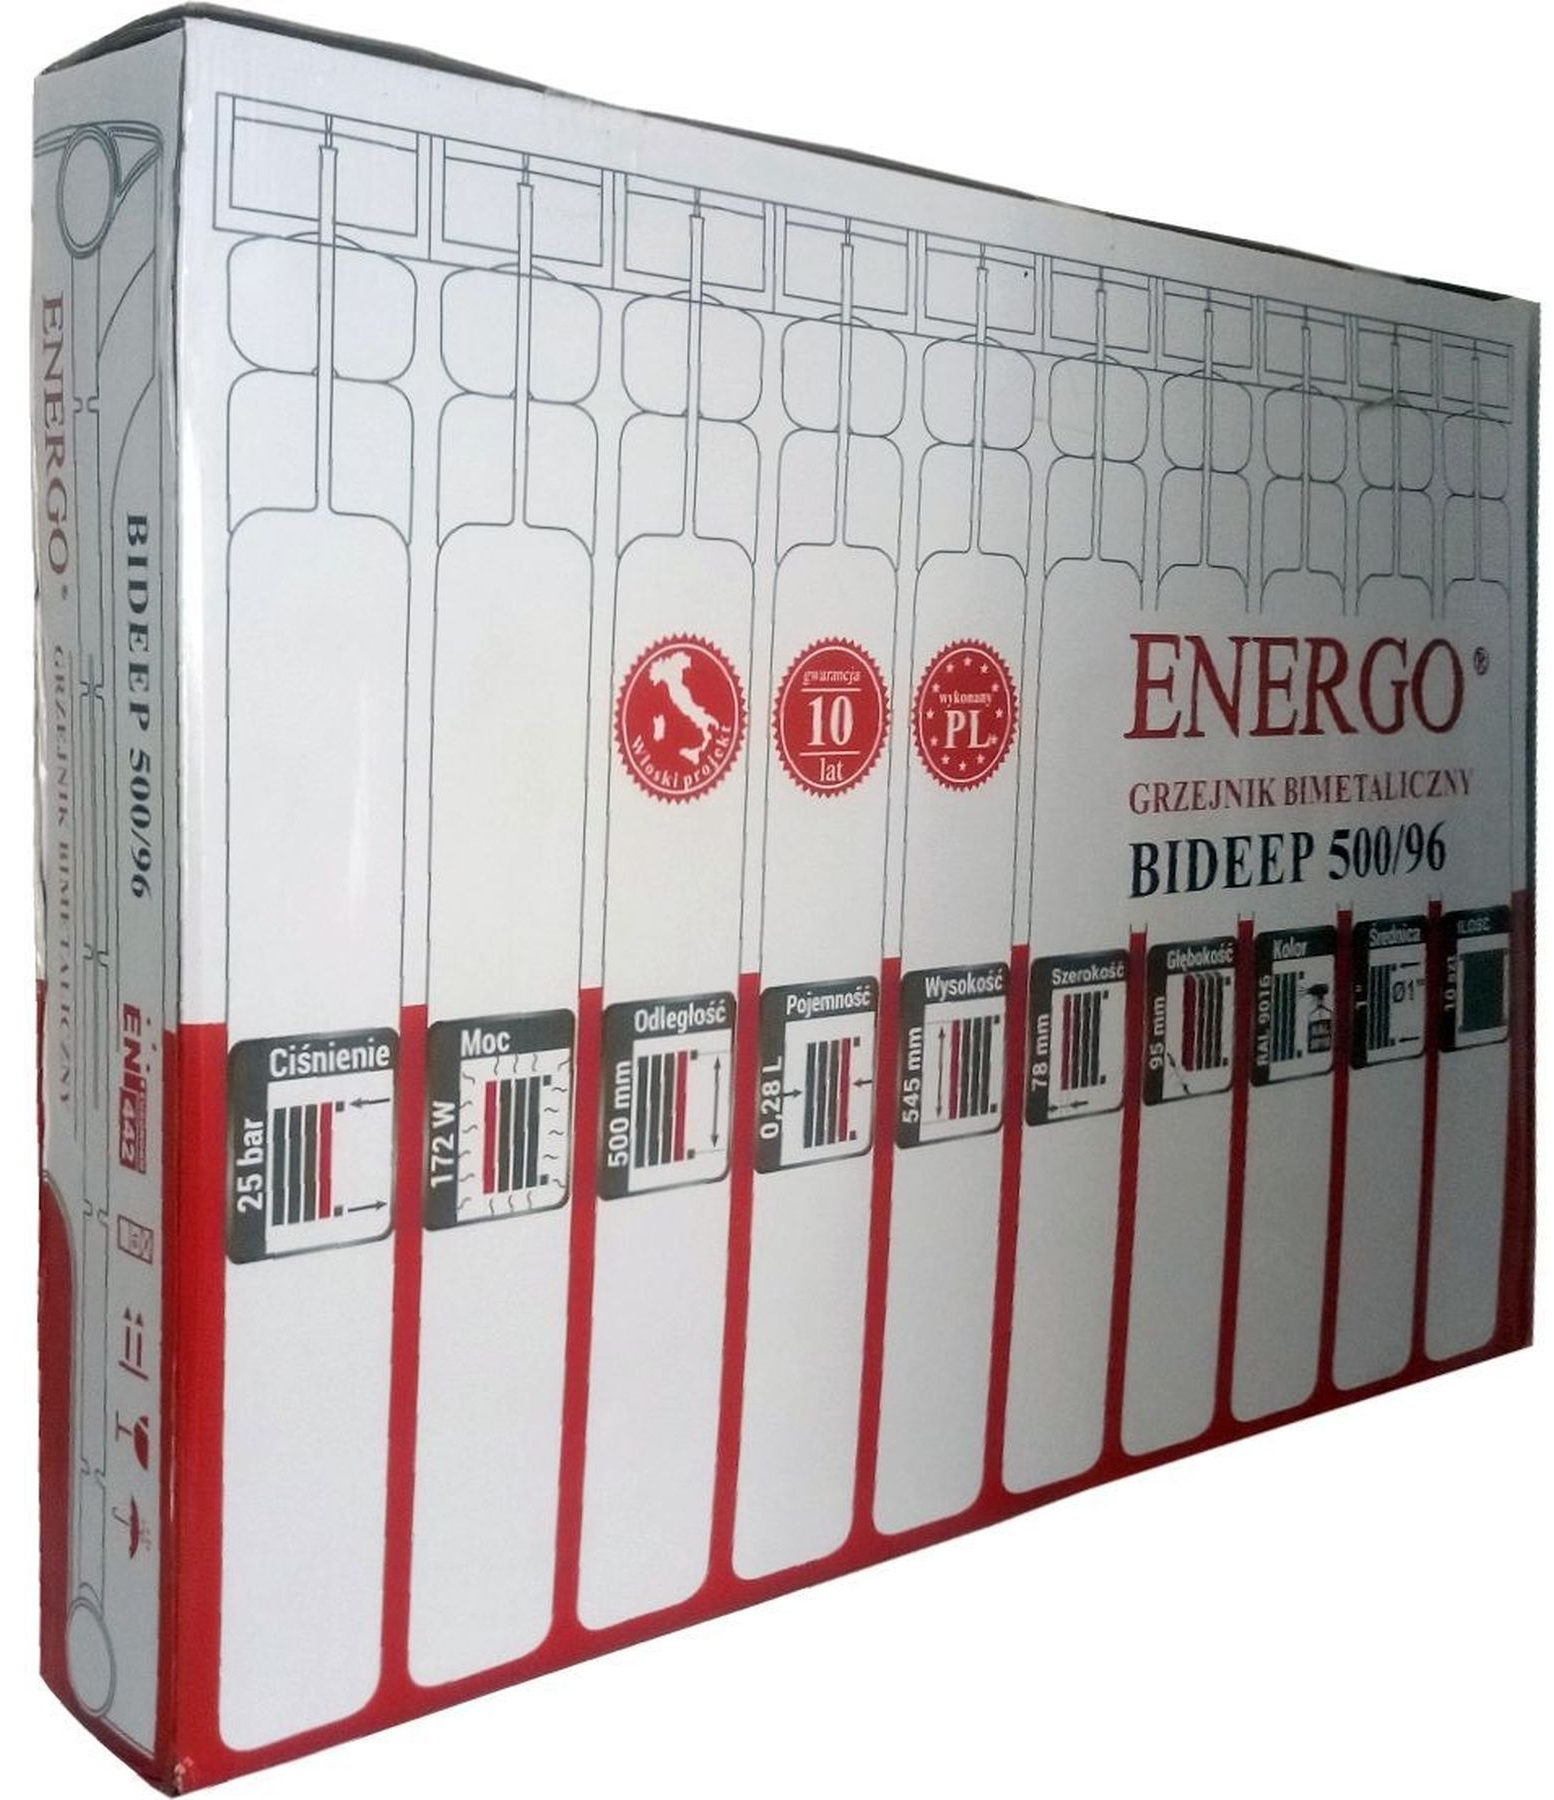 Радіатор для отопления Energo BIDEEP 500/96 (кратно 10) 000020261 характеристики - фотография 7